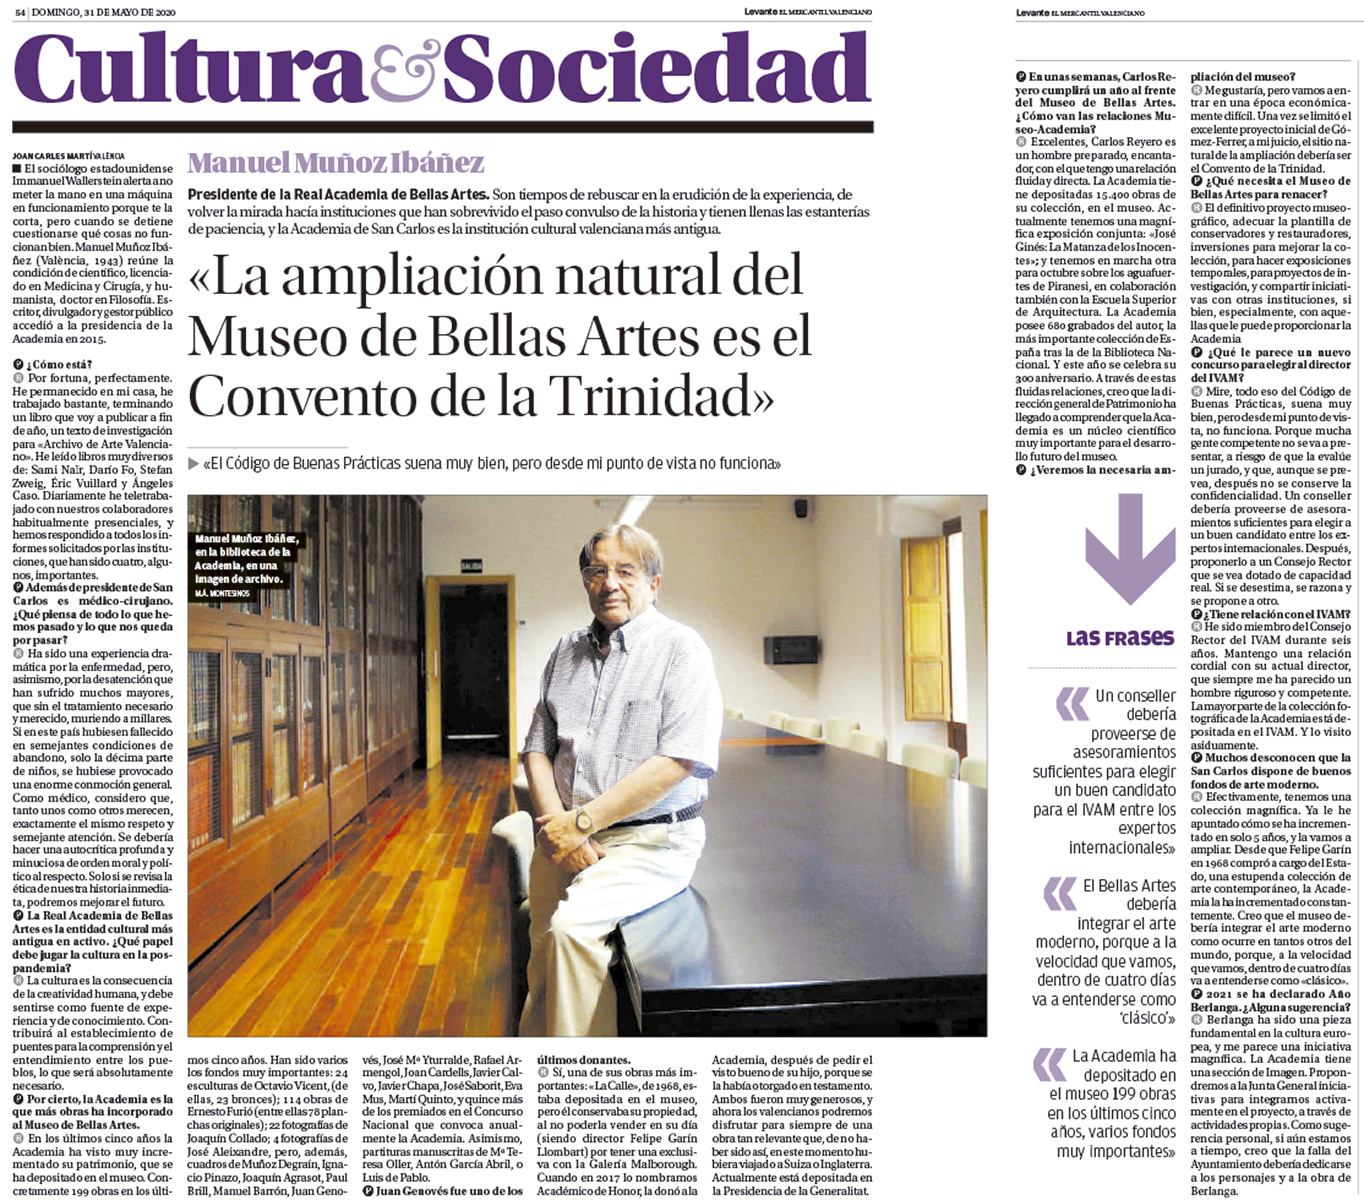 Manuel Muñoz Ibáñez: "La ampliación natural del Museo de Bellas Artes es el Convento de la Trinidad"